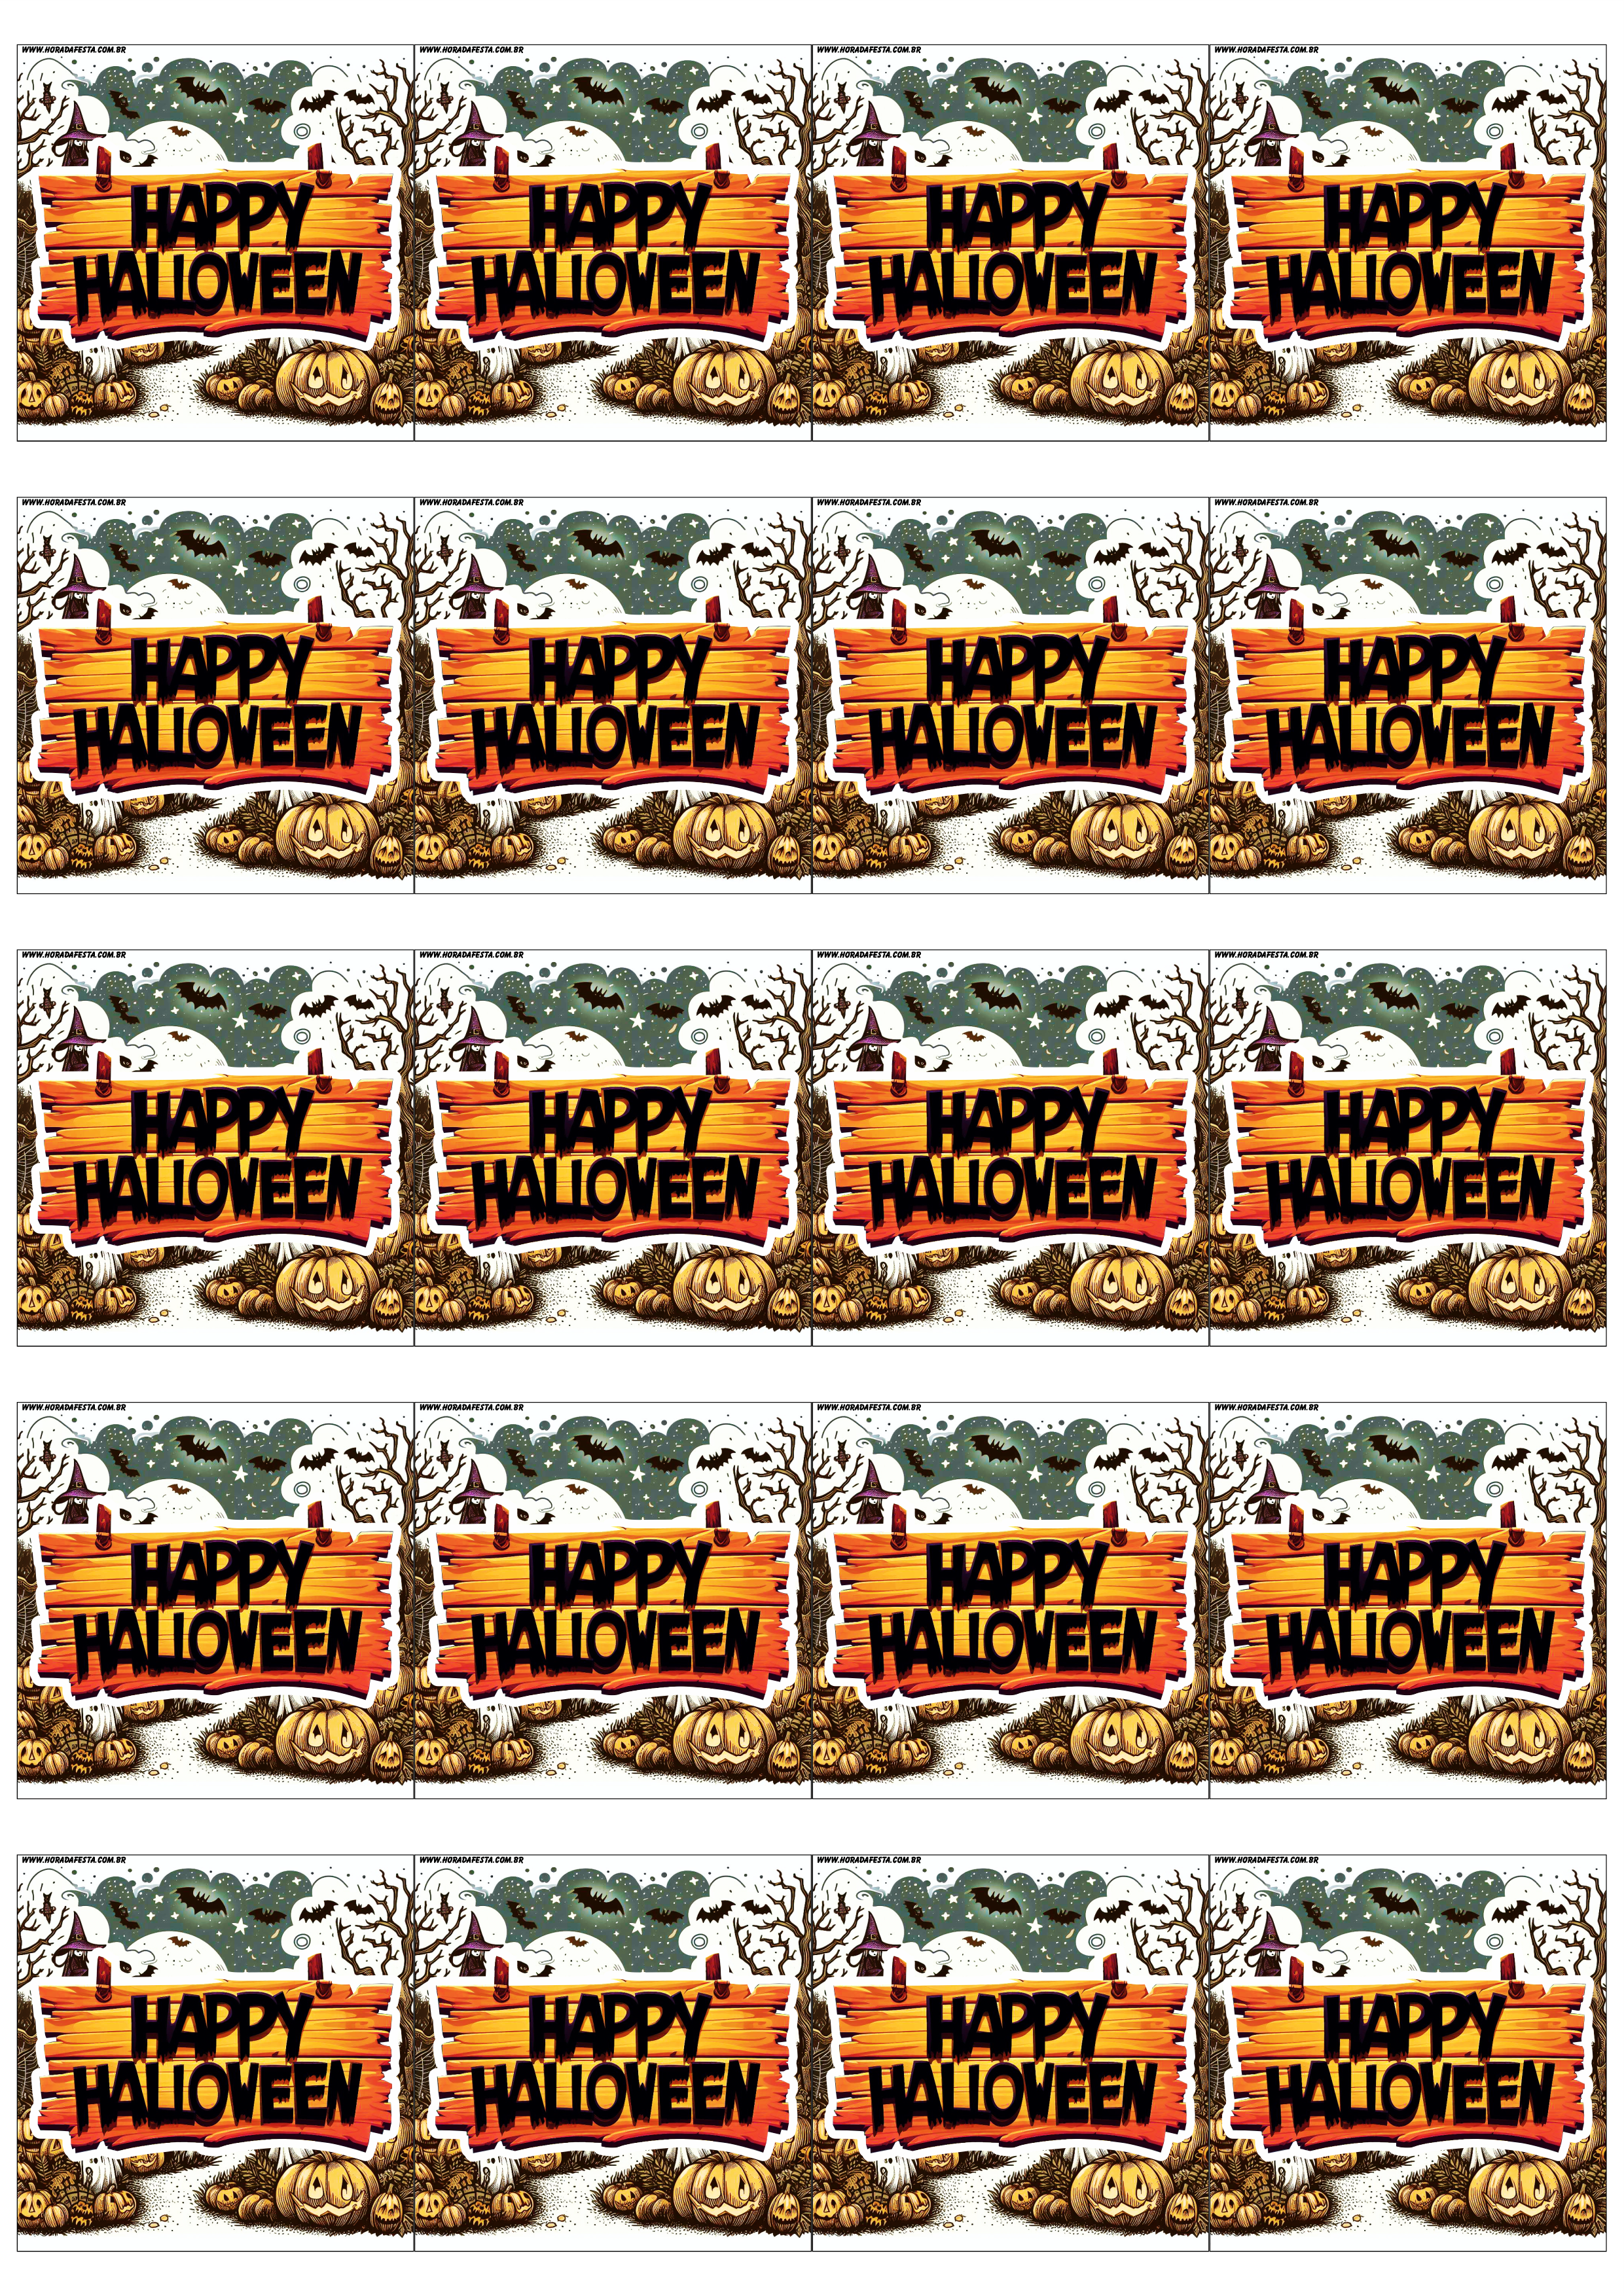 Happy Halloween adesivo tag sticker painel decoração grátis de festa artigos de papelaria design 20 imagens png